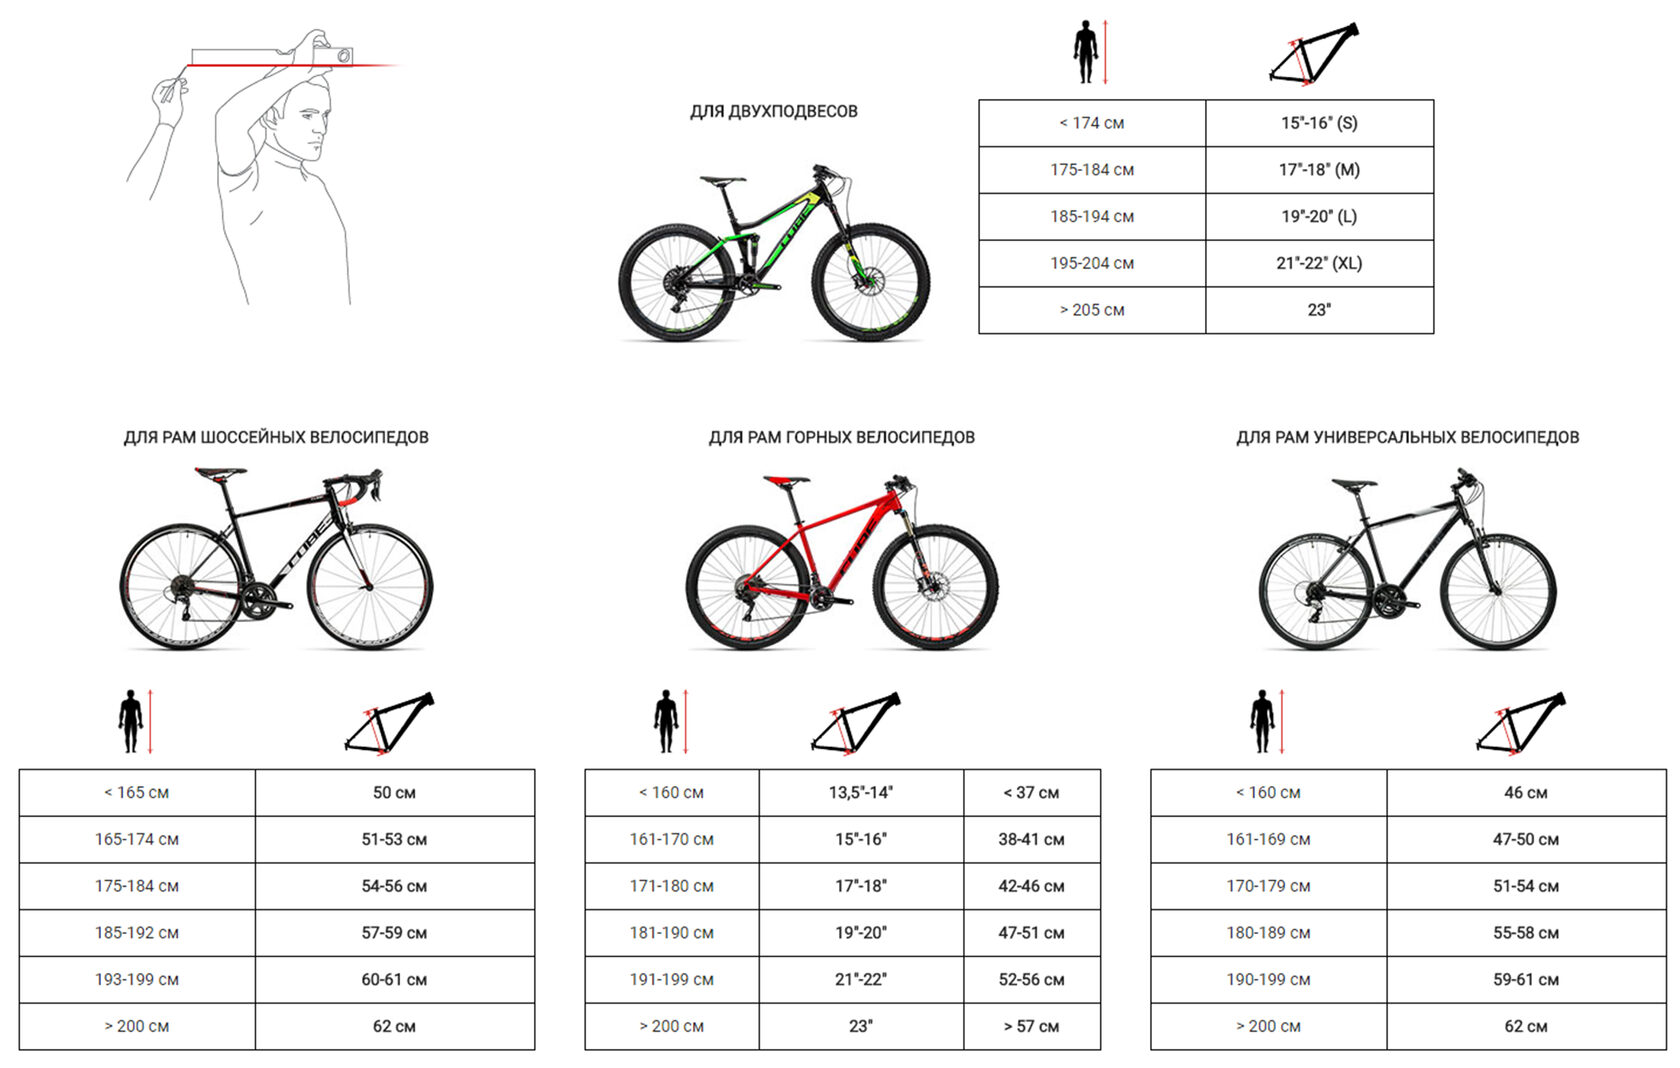 Рама 20 дюймов на какой рост. Велосипед stels размер рамы и рост. Как выбрать размер горного велосипеда по росту таблица. Как выбрать параметры велосипеда по росту и весу таблица. Рост и рама велосипеда таблица.